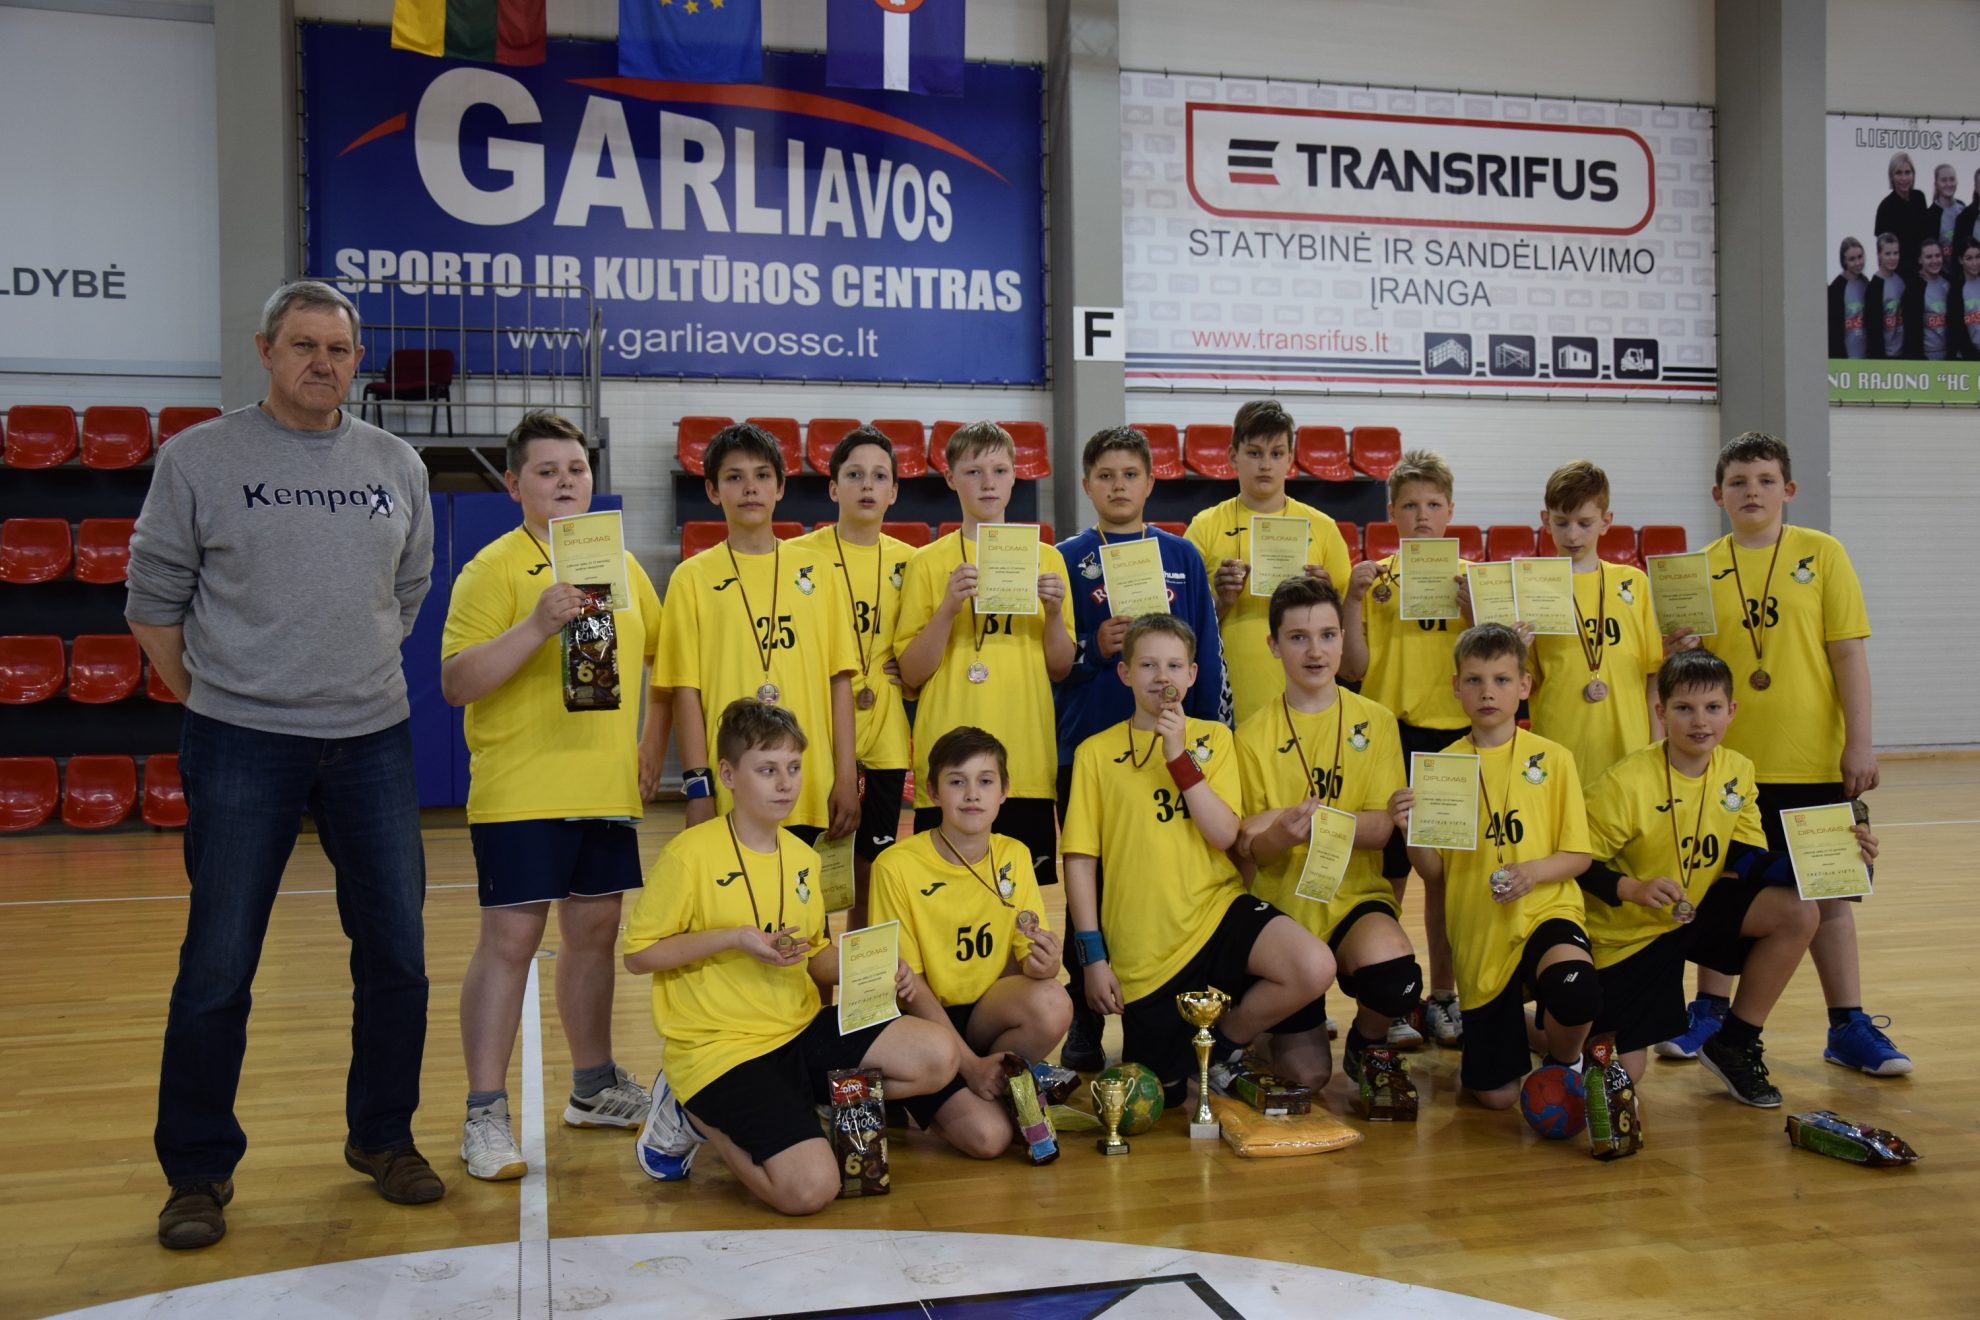 Gegužės 5-7 d. Garliavoje vyko Lietuvos rankinio čempionato U-12 amžiaus grupės finalinės varžybos, kuriose bronzą iškovojo Panevėžio KKSC rankininkai.